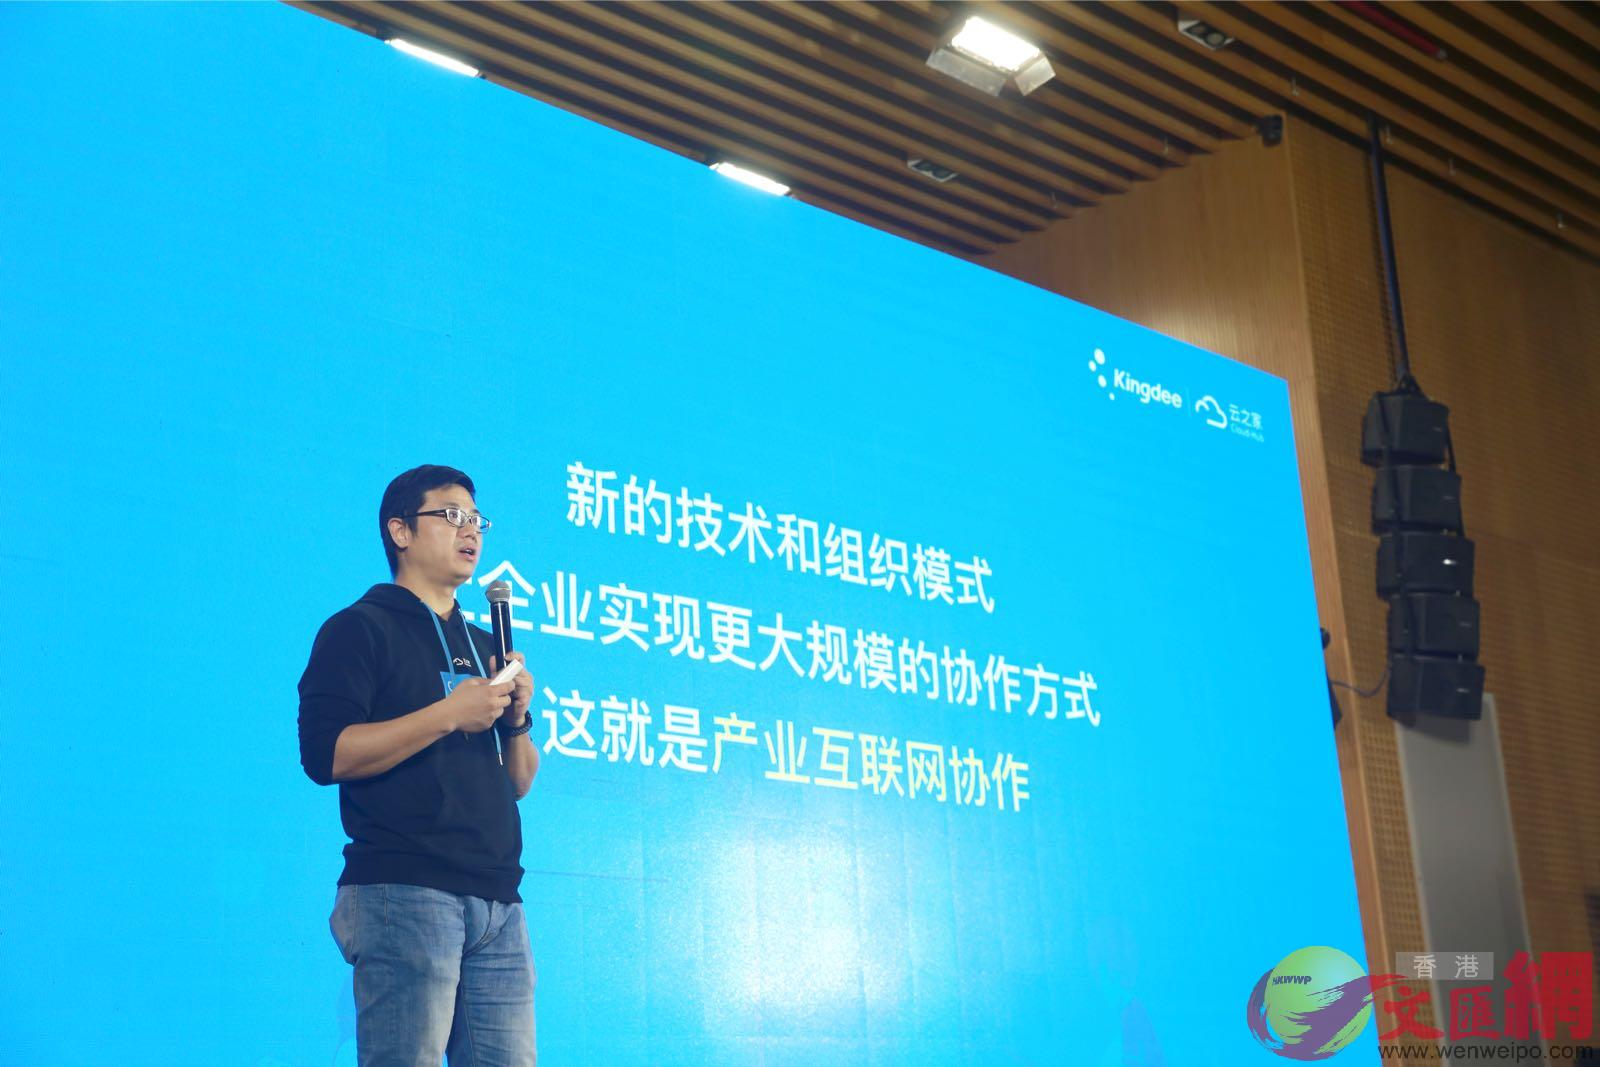 雲之家產品總監宋凱表示A新的技術和組織模式能讓企業實現更大規模的協作